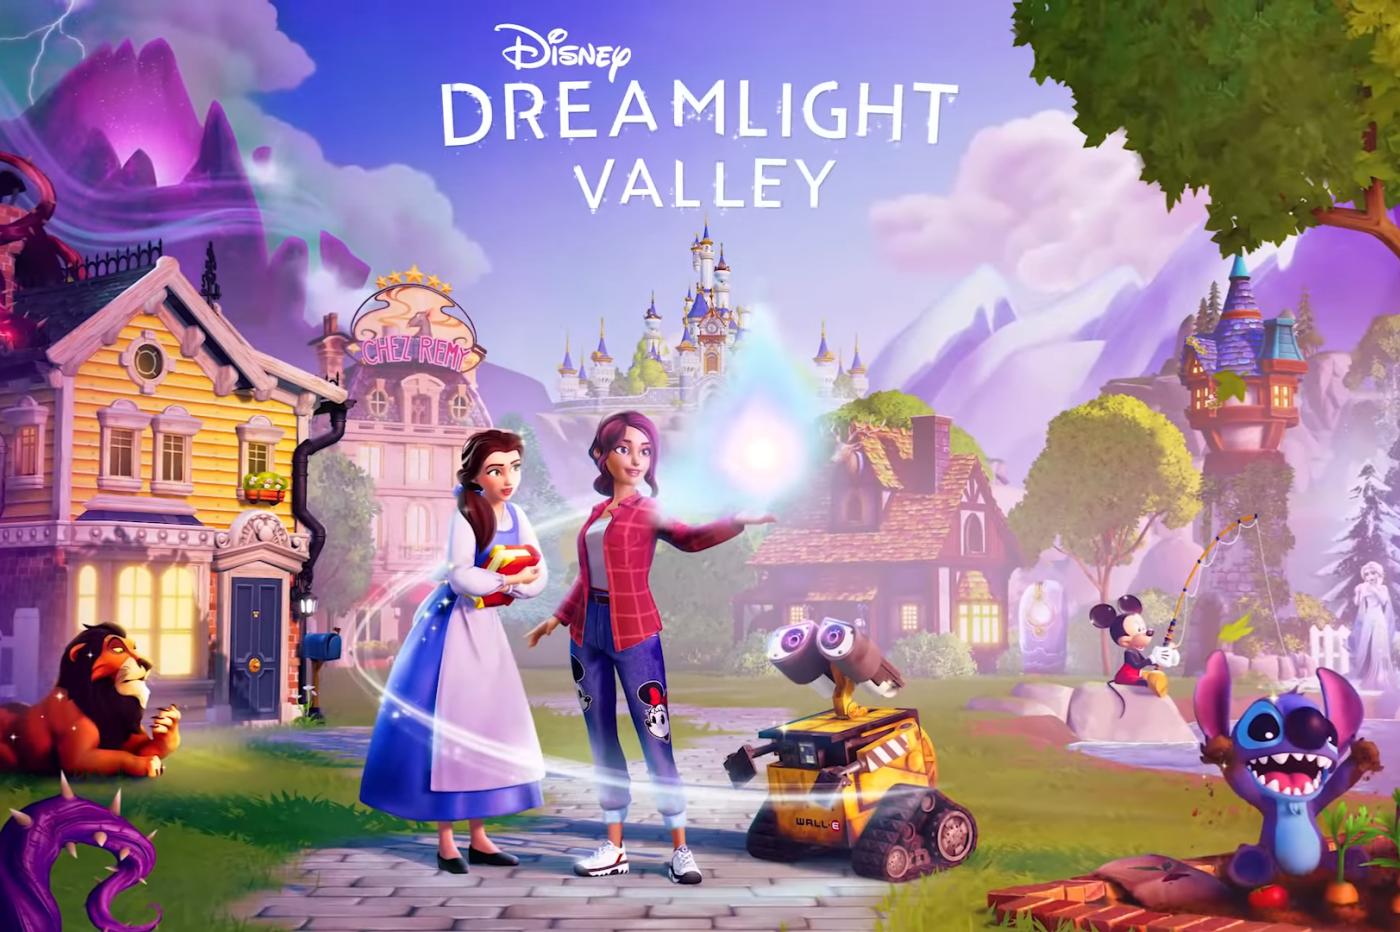 Image promotionnelle de Disney Dreamlight Valley montrant un protagoniste du jeu avec Belle, Wall-E, Mickey, Stitch et d'autres personnages Disney